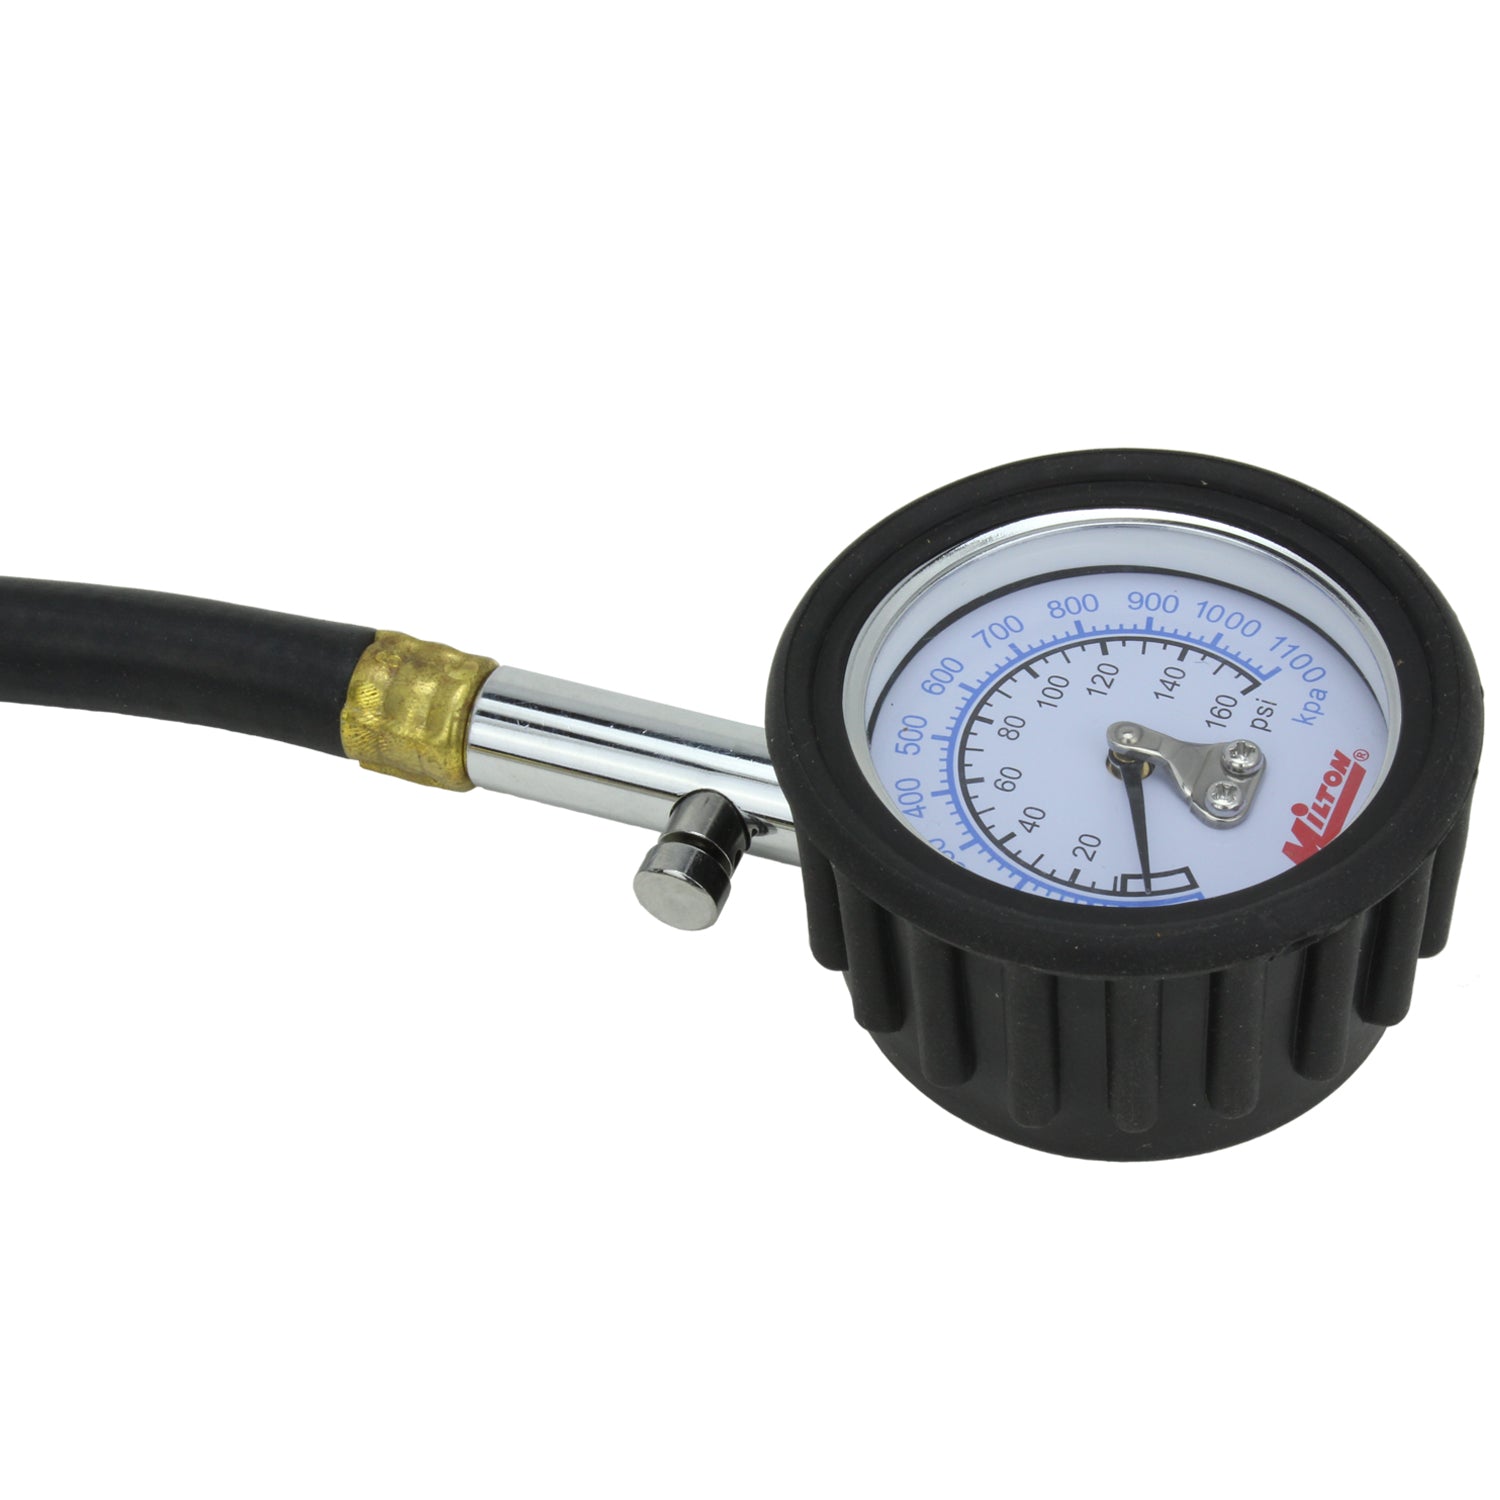 High Pressure Dial Tire Pressure Gauge - Dual Head Air Chuck, 12